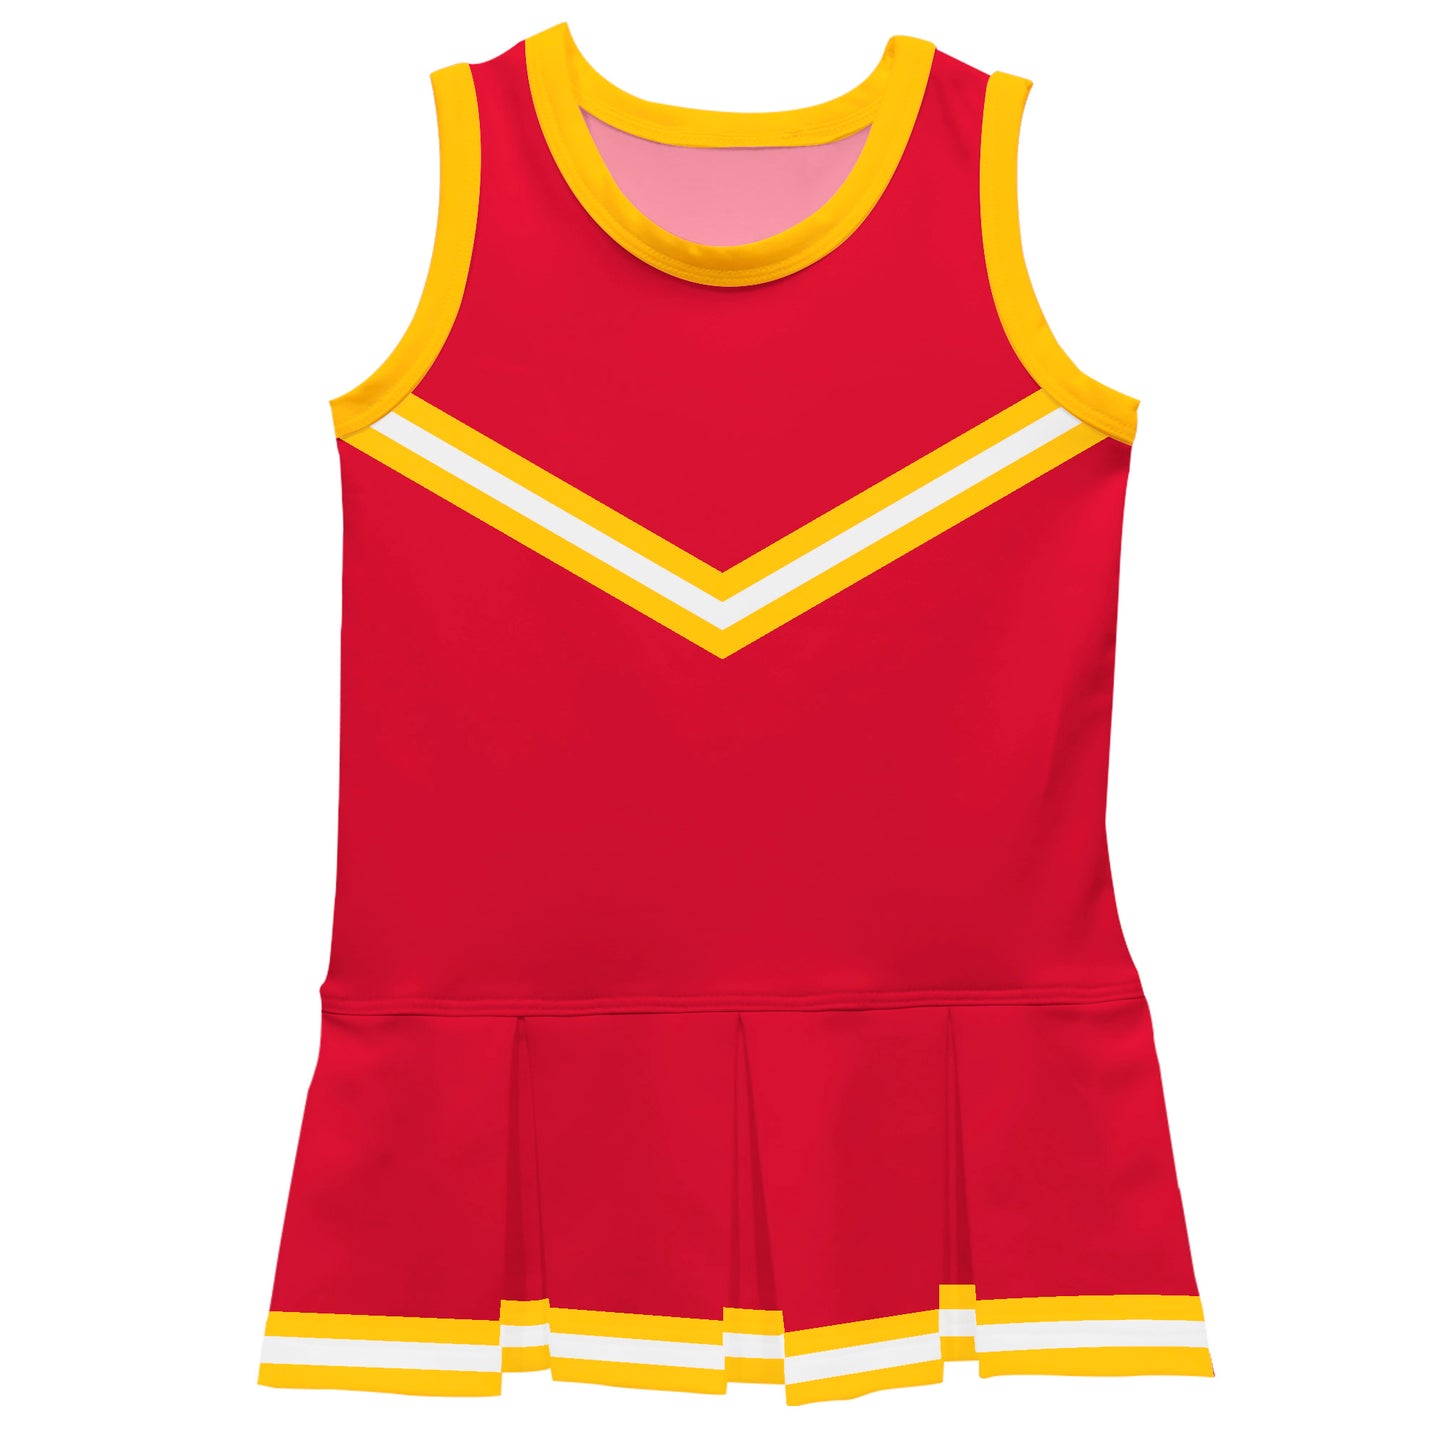 Red Yellow Sleeveless Cheerleader Dress